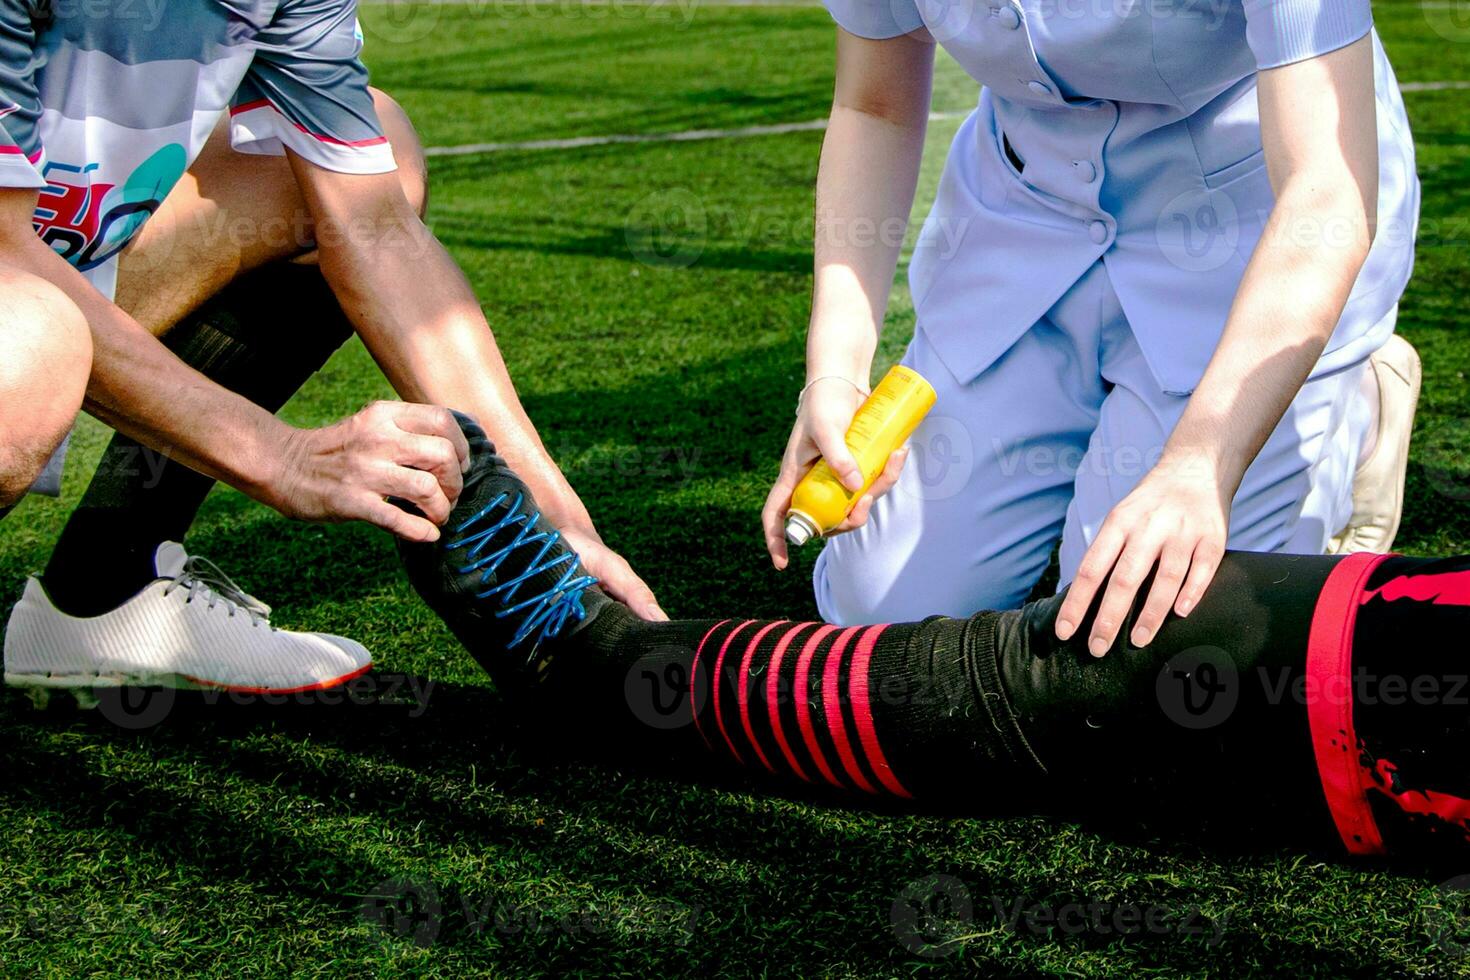 infirmière est portion une Football joueur qui blessé le sien jambe tandis que en jouant Football sur le herbe. photo